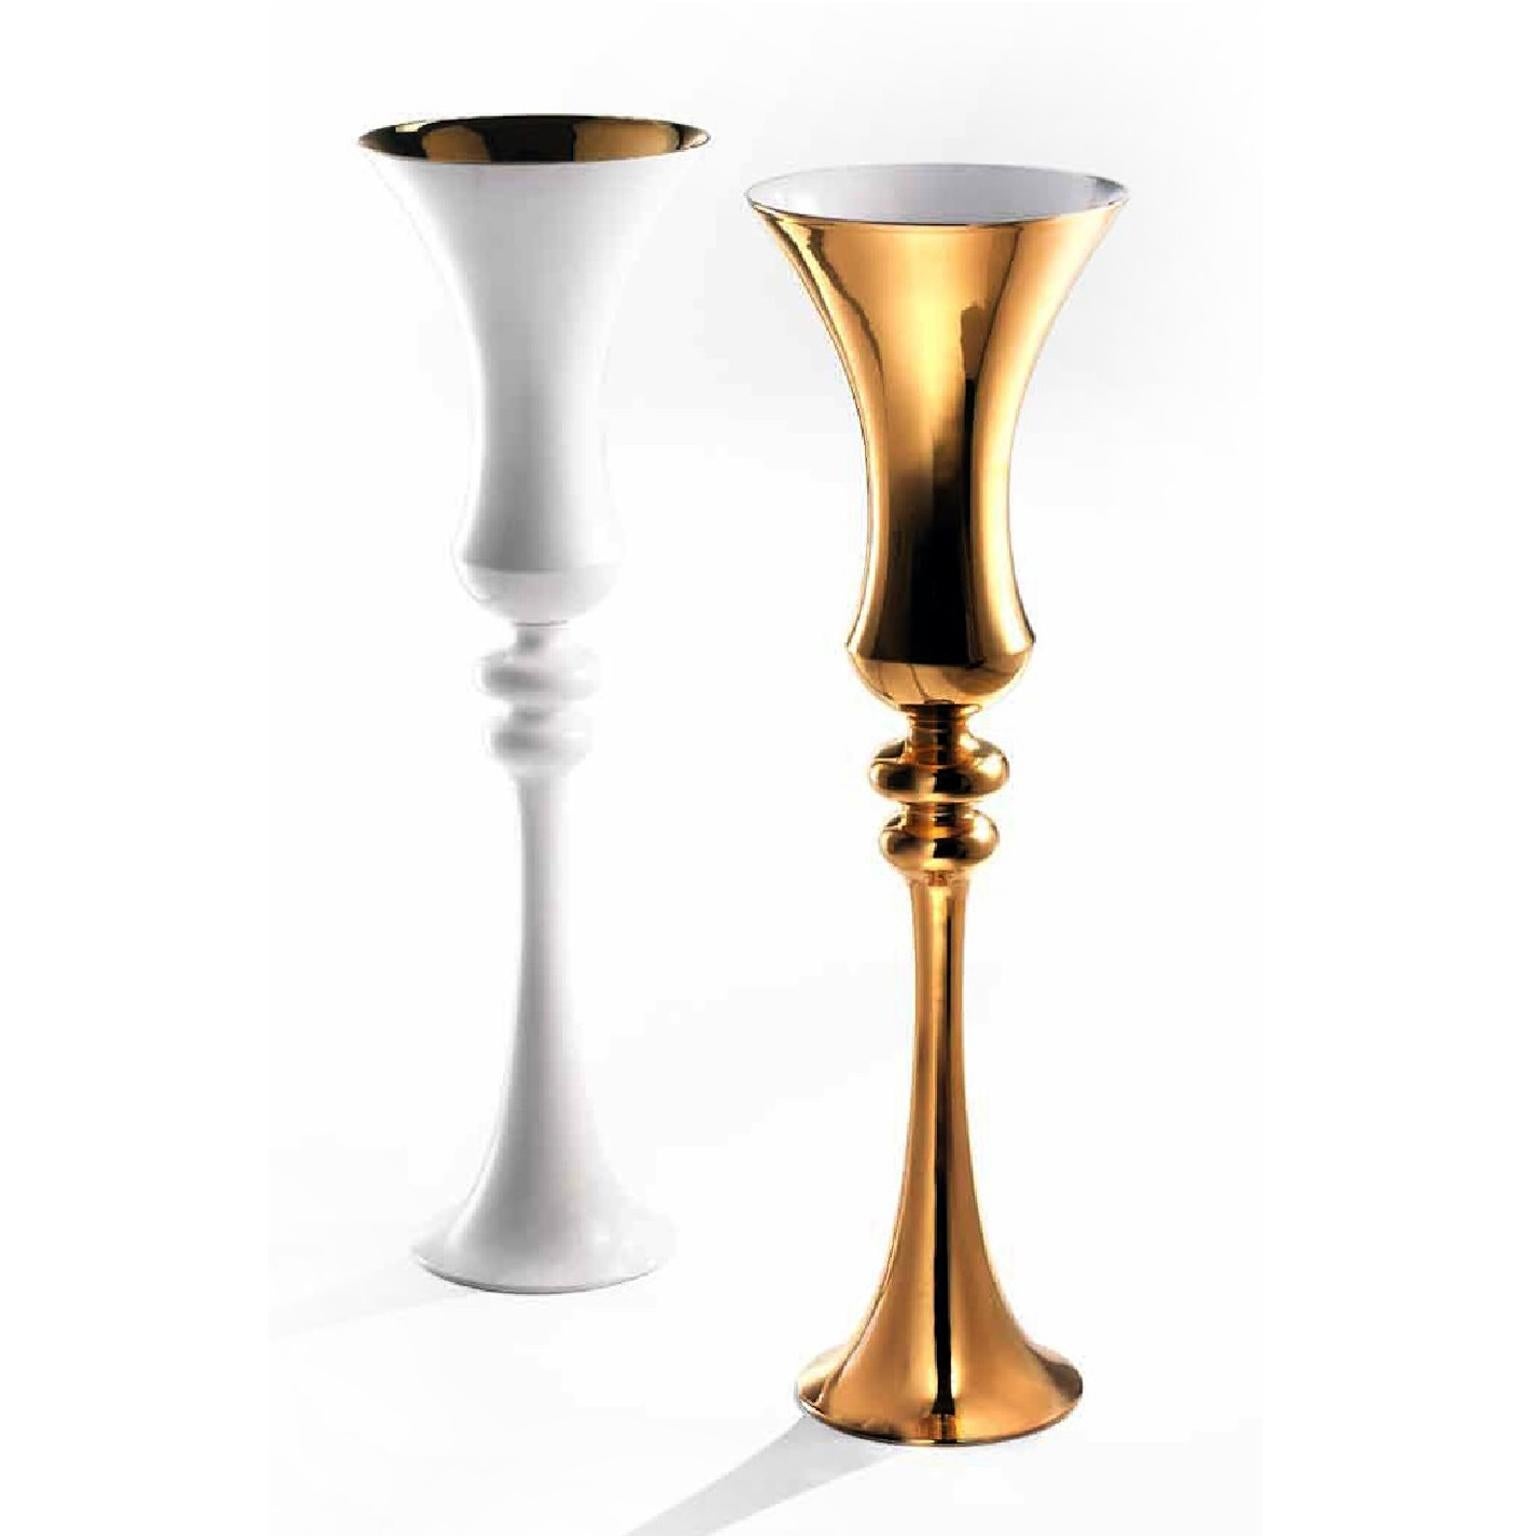 MERLINO - Ceramic vase handcrafted in 24-karat gold, white glazed inside

cod. GL050
measures: Height 90.0 cm., diameter 28.0 cm.